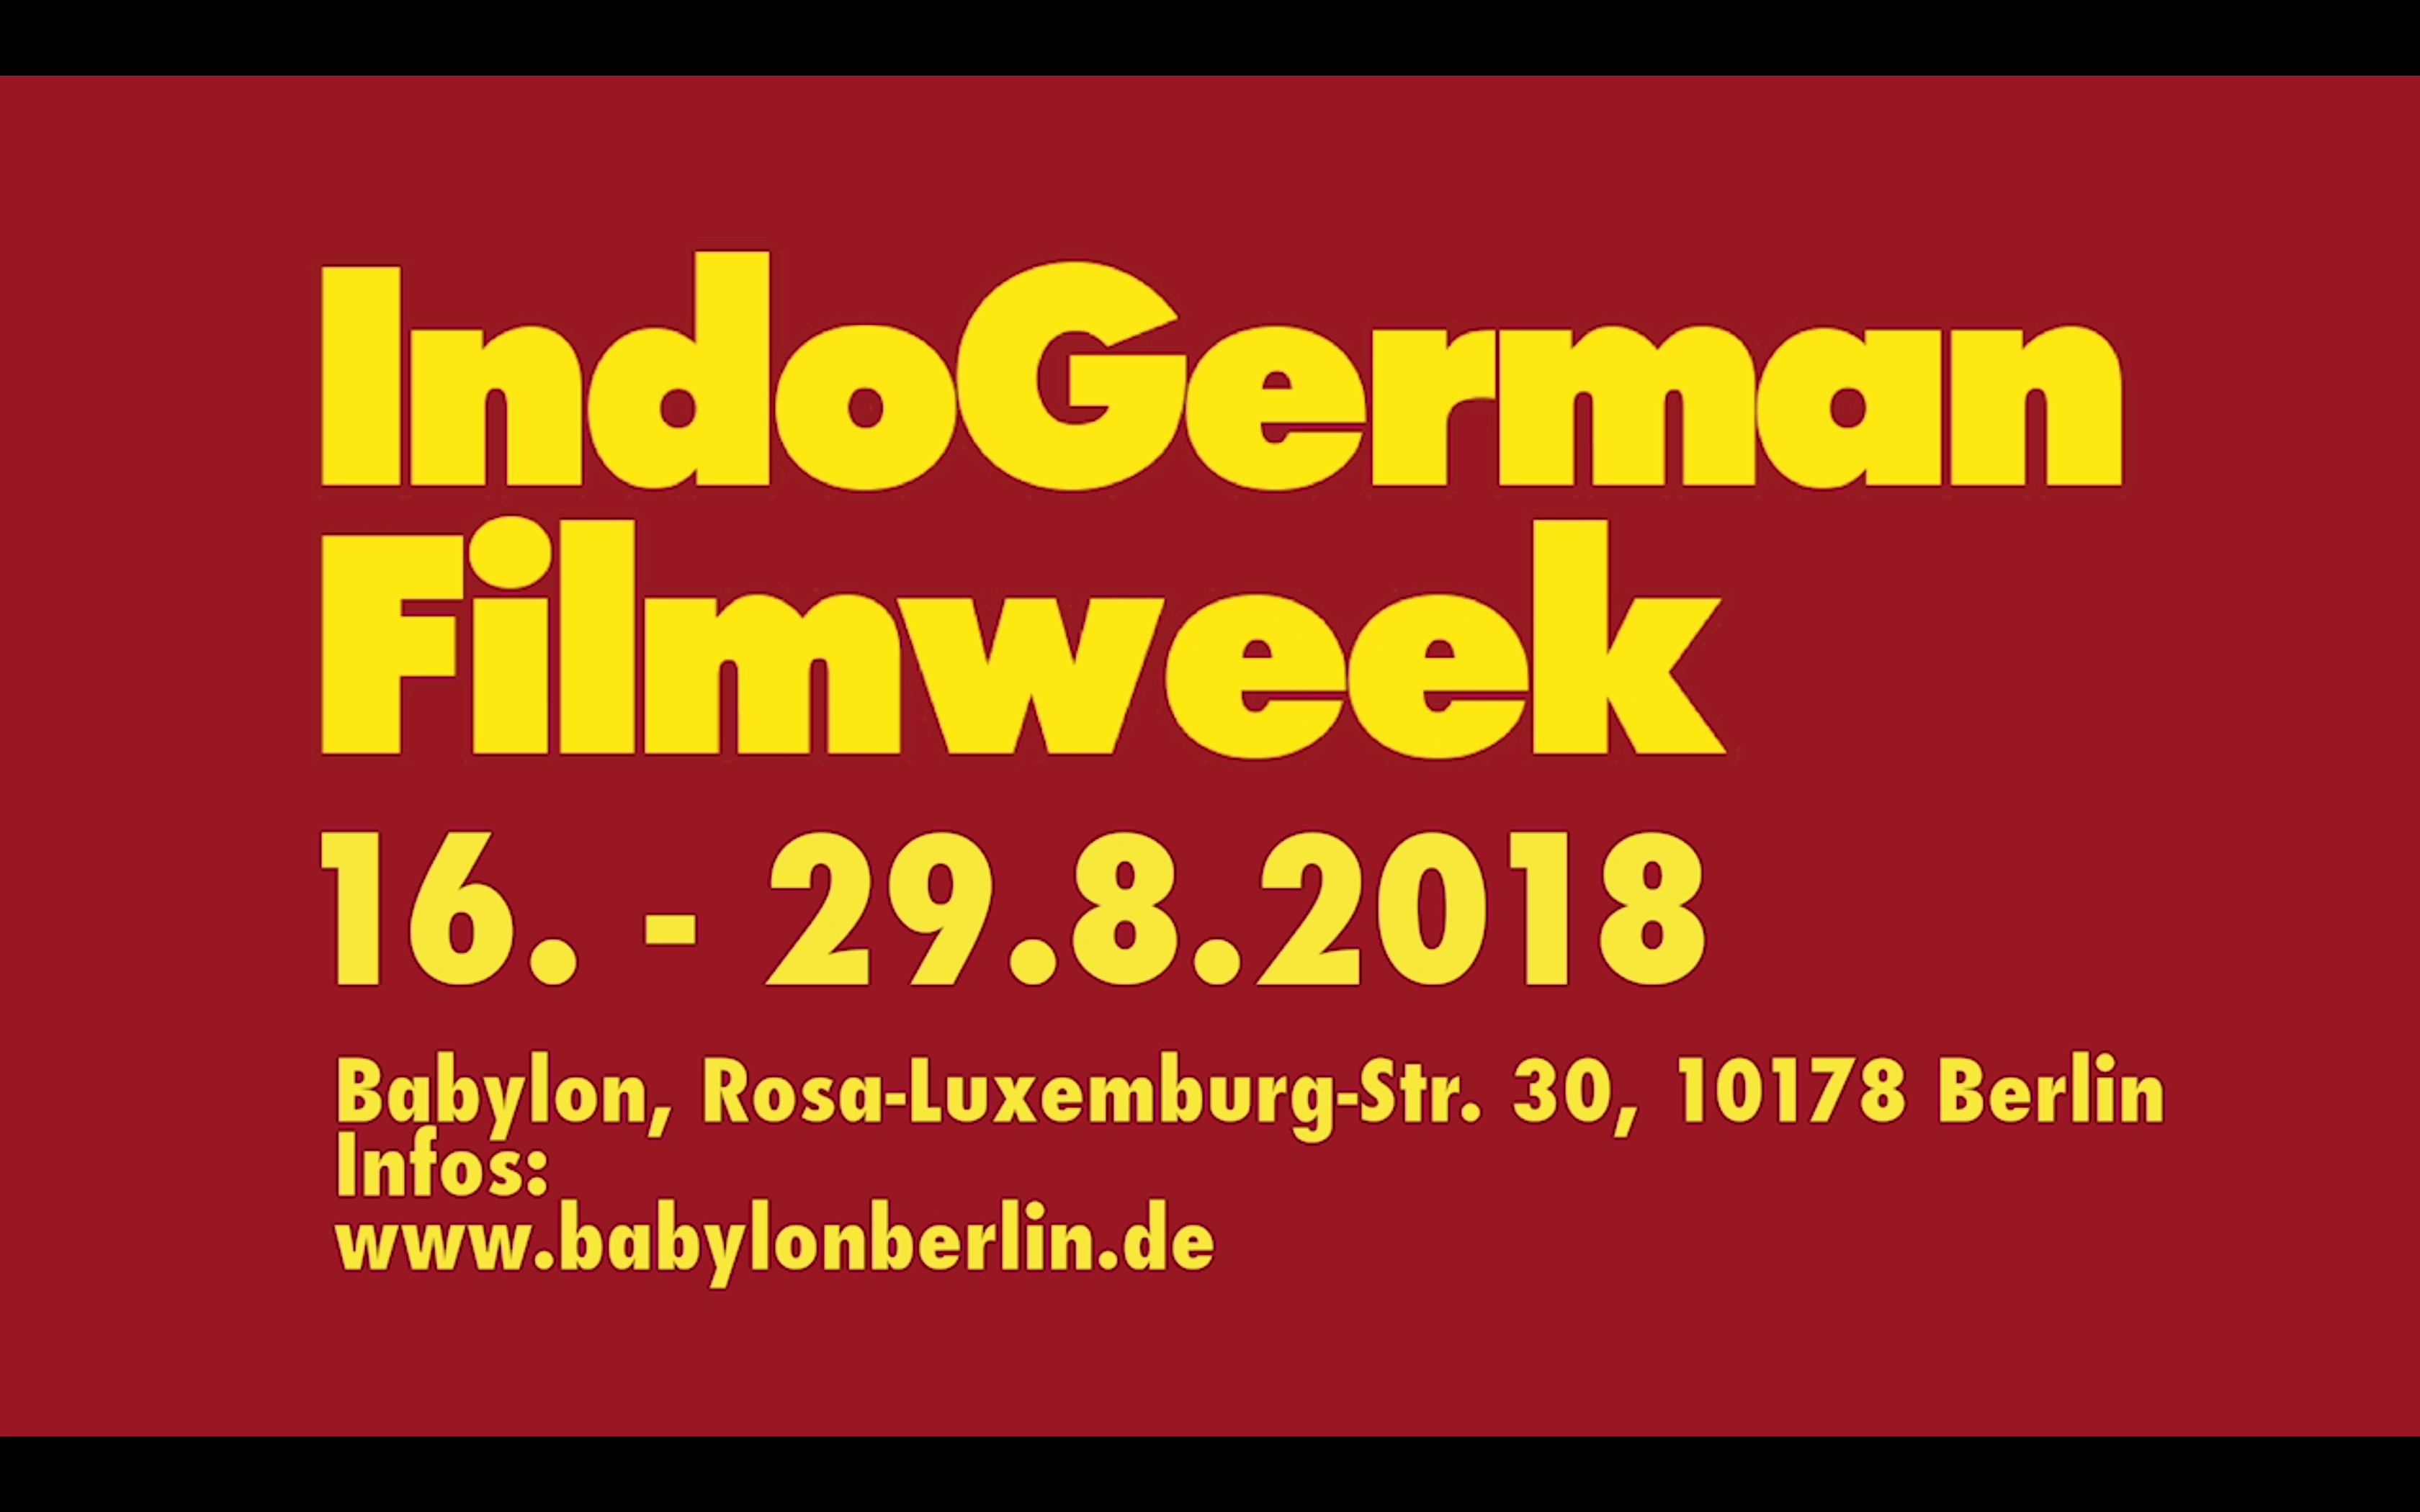 IndoGerman Filmweek Trailer 2018 (long version)